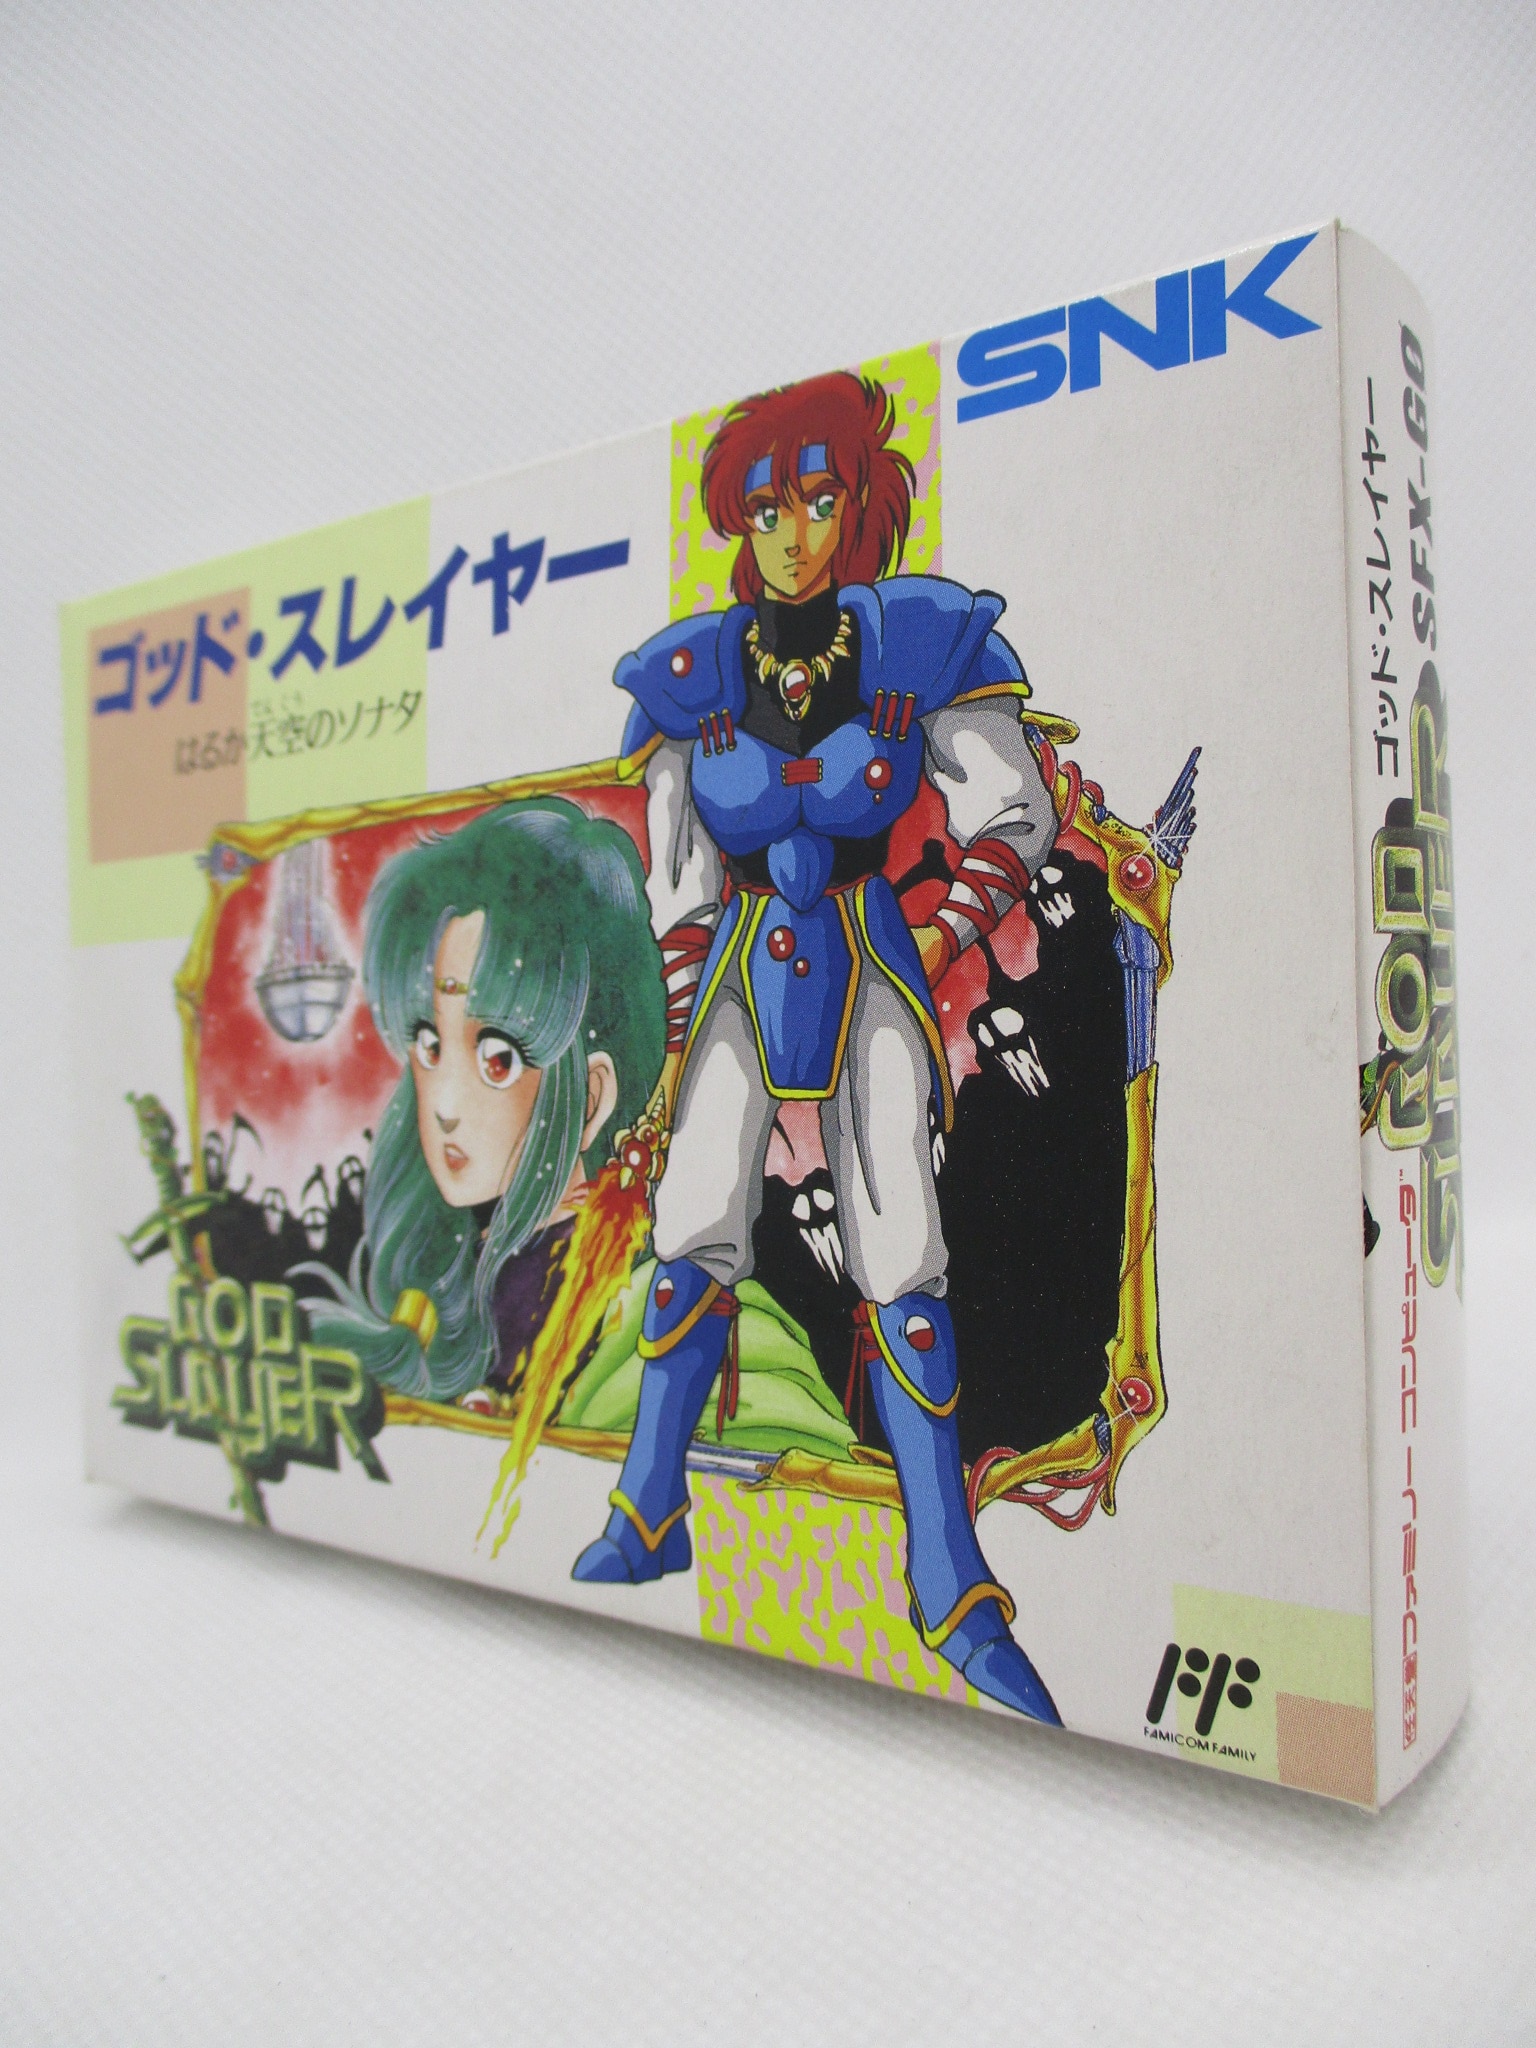 ゴッド・スレイヤー SNK ファミコンソフト - Nintendo Switch